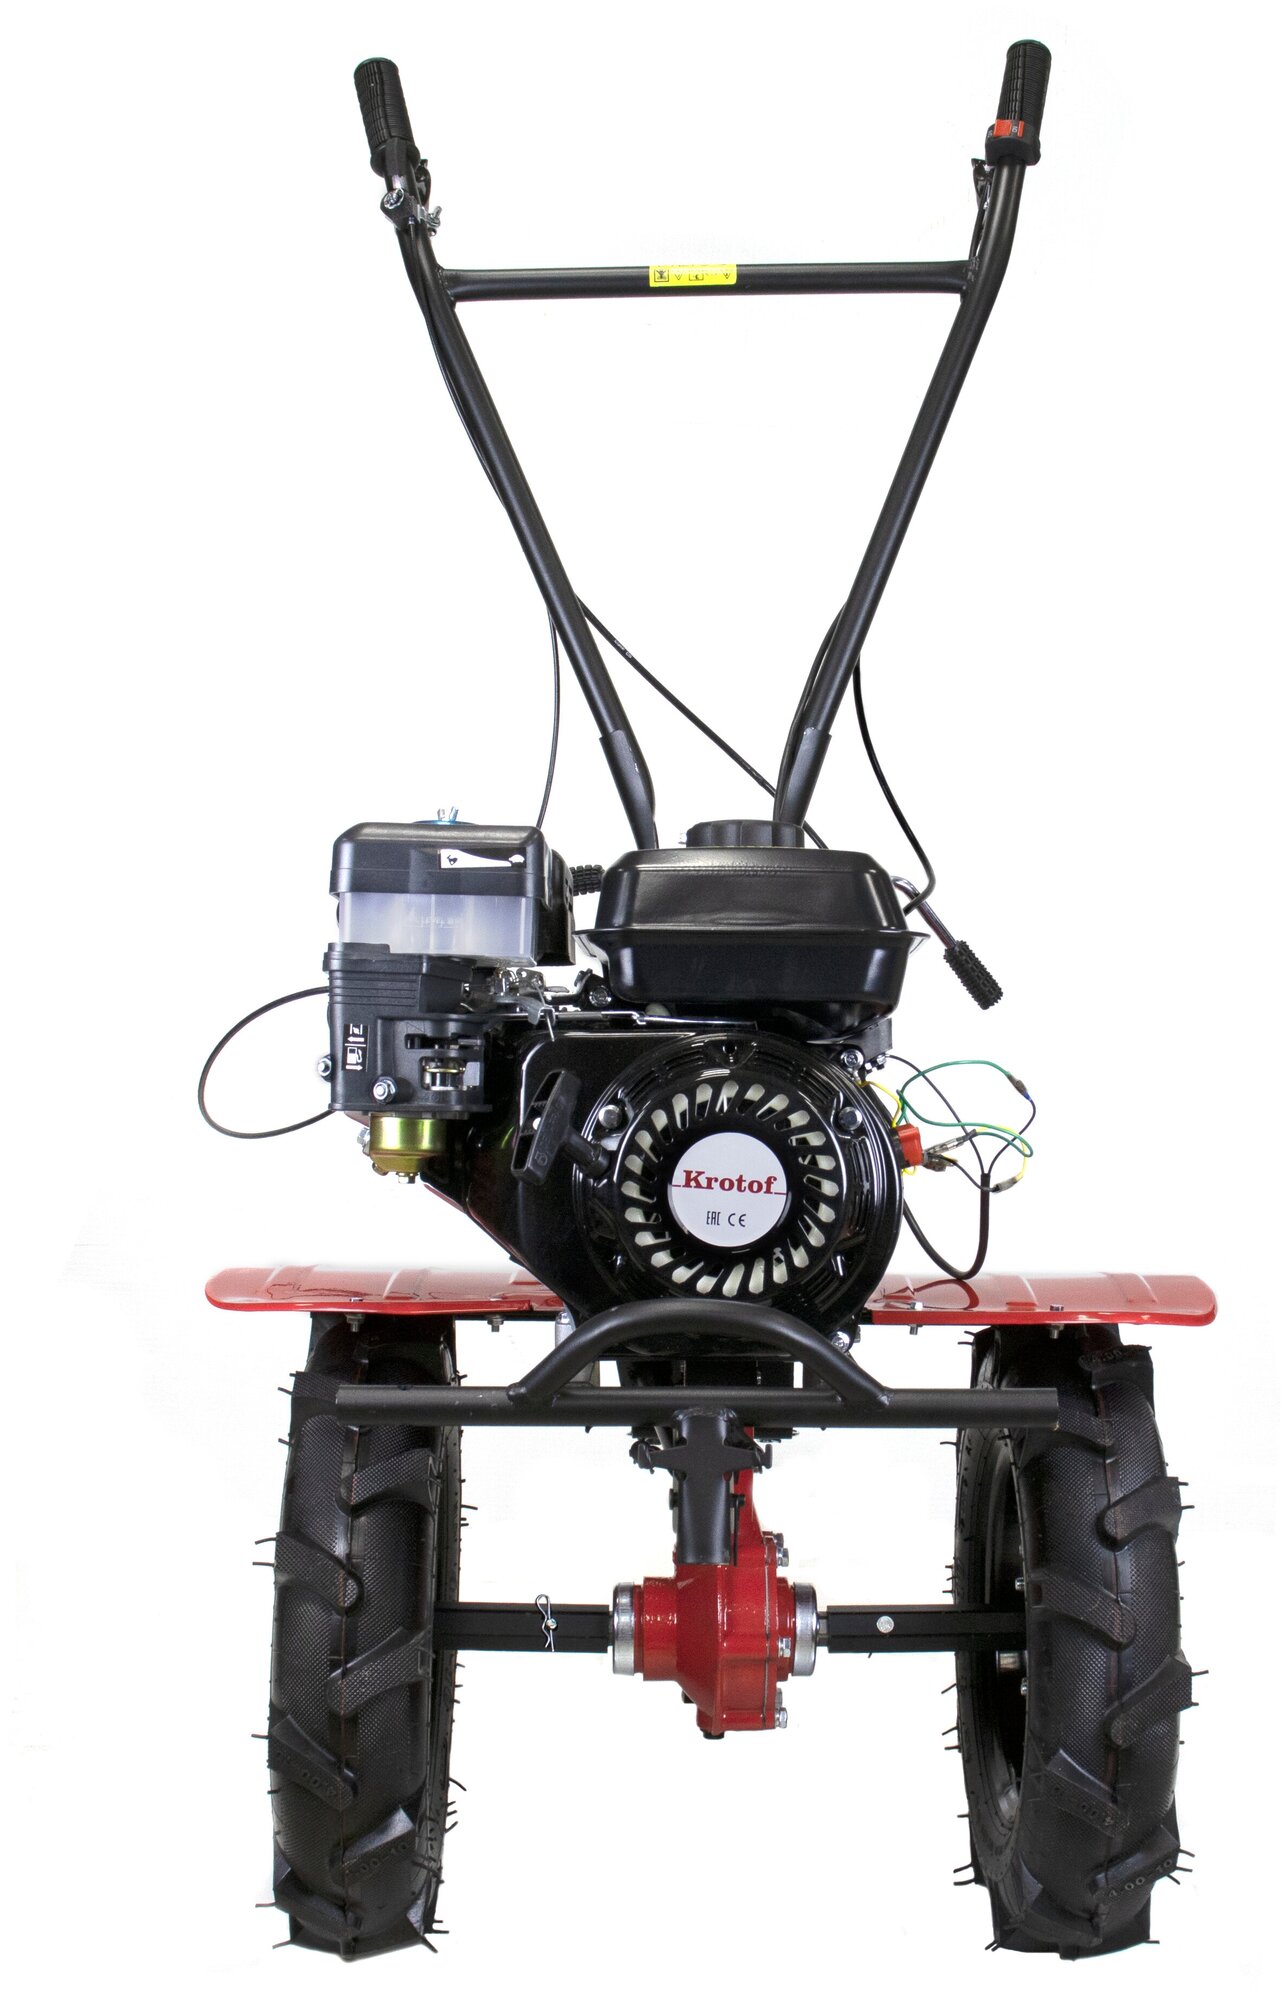 Мотоблок Krotof TLR1100L (7 л.с. двигатель бензиновый, КПП, 3-х скоростной, ручной запуск, без колес) / мотокультиватор / кротоф - фотография № 5